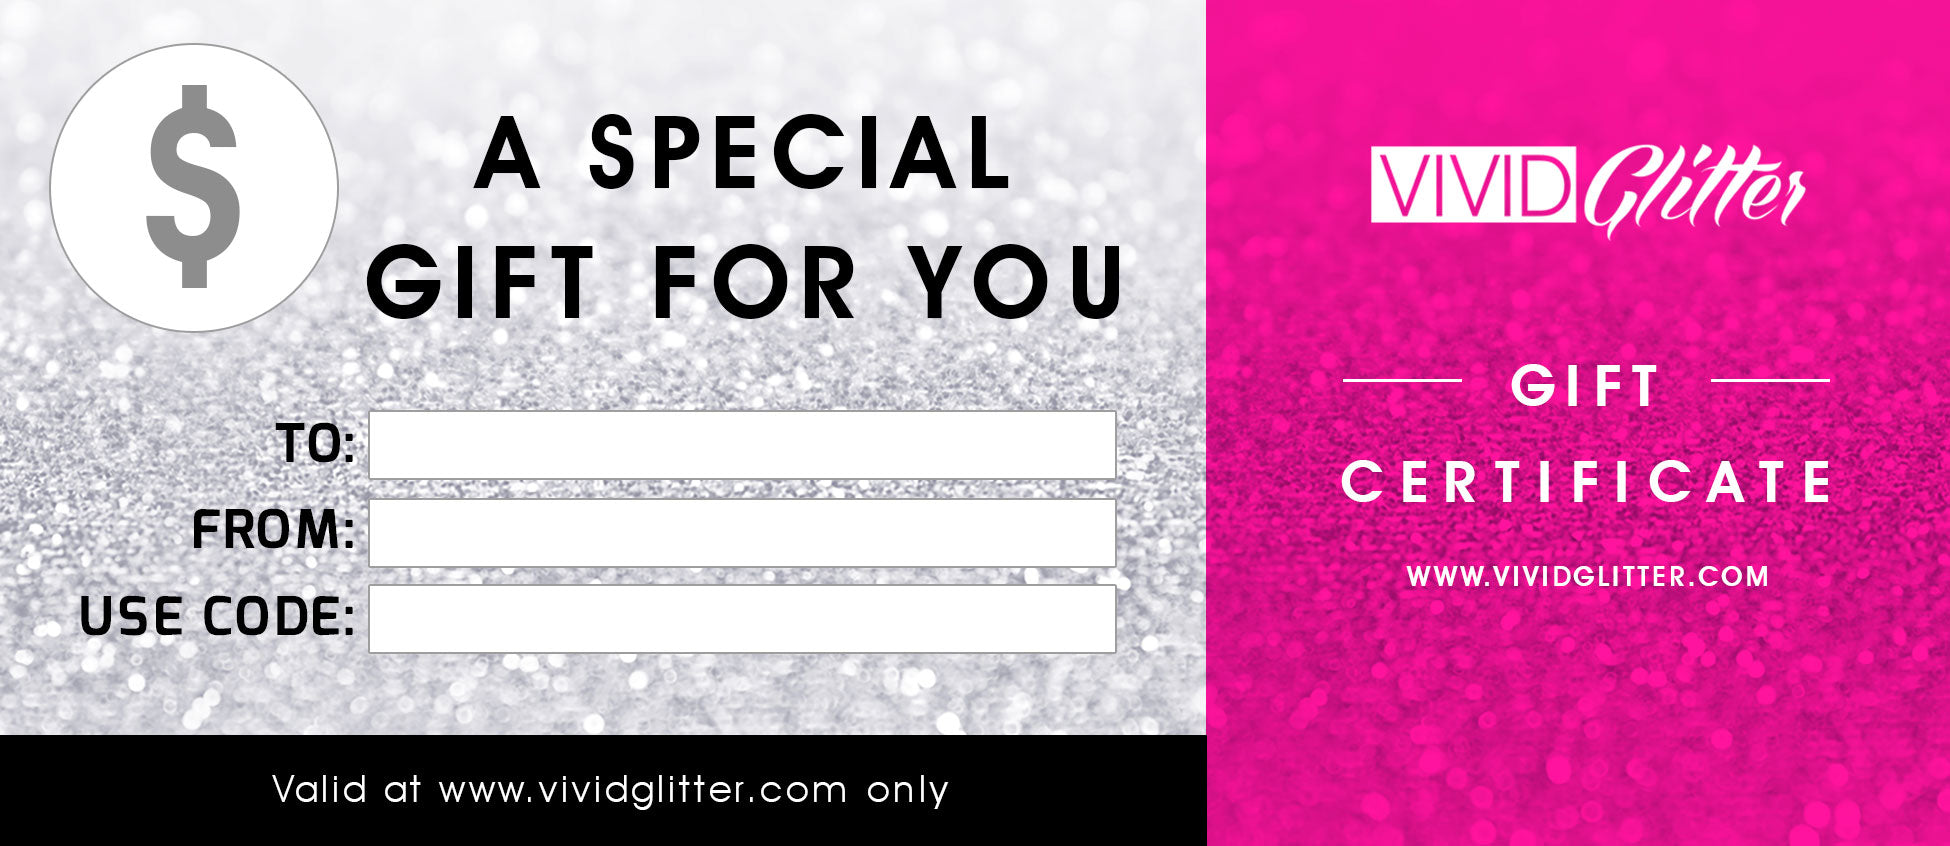 Gift Certificate - Vivid Glitter